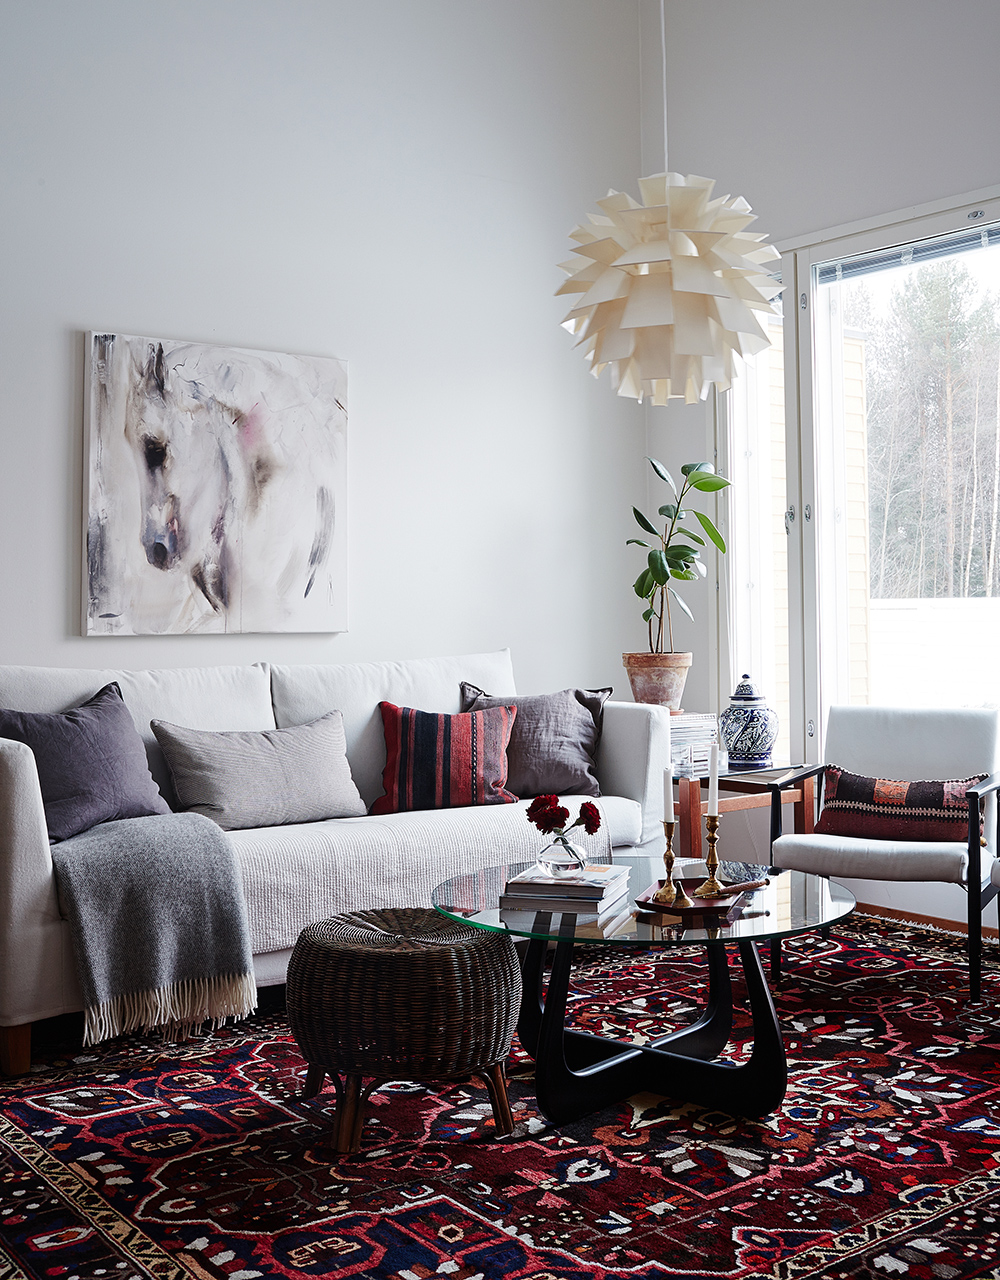 12-interior-homedecoration-photo-krista-keltanen-01